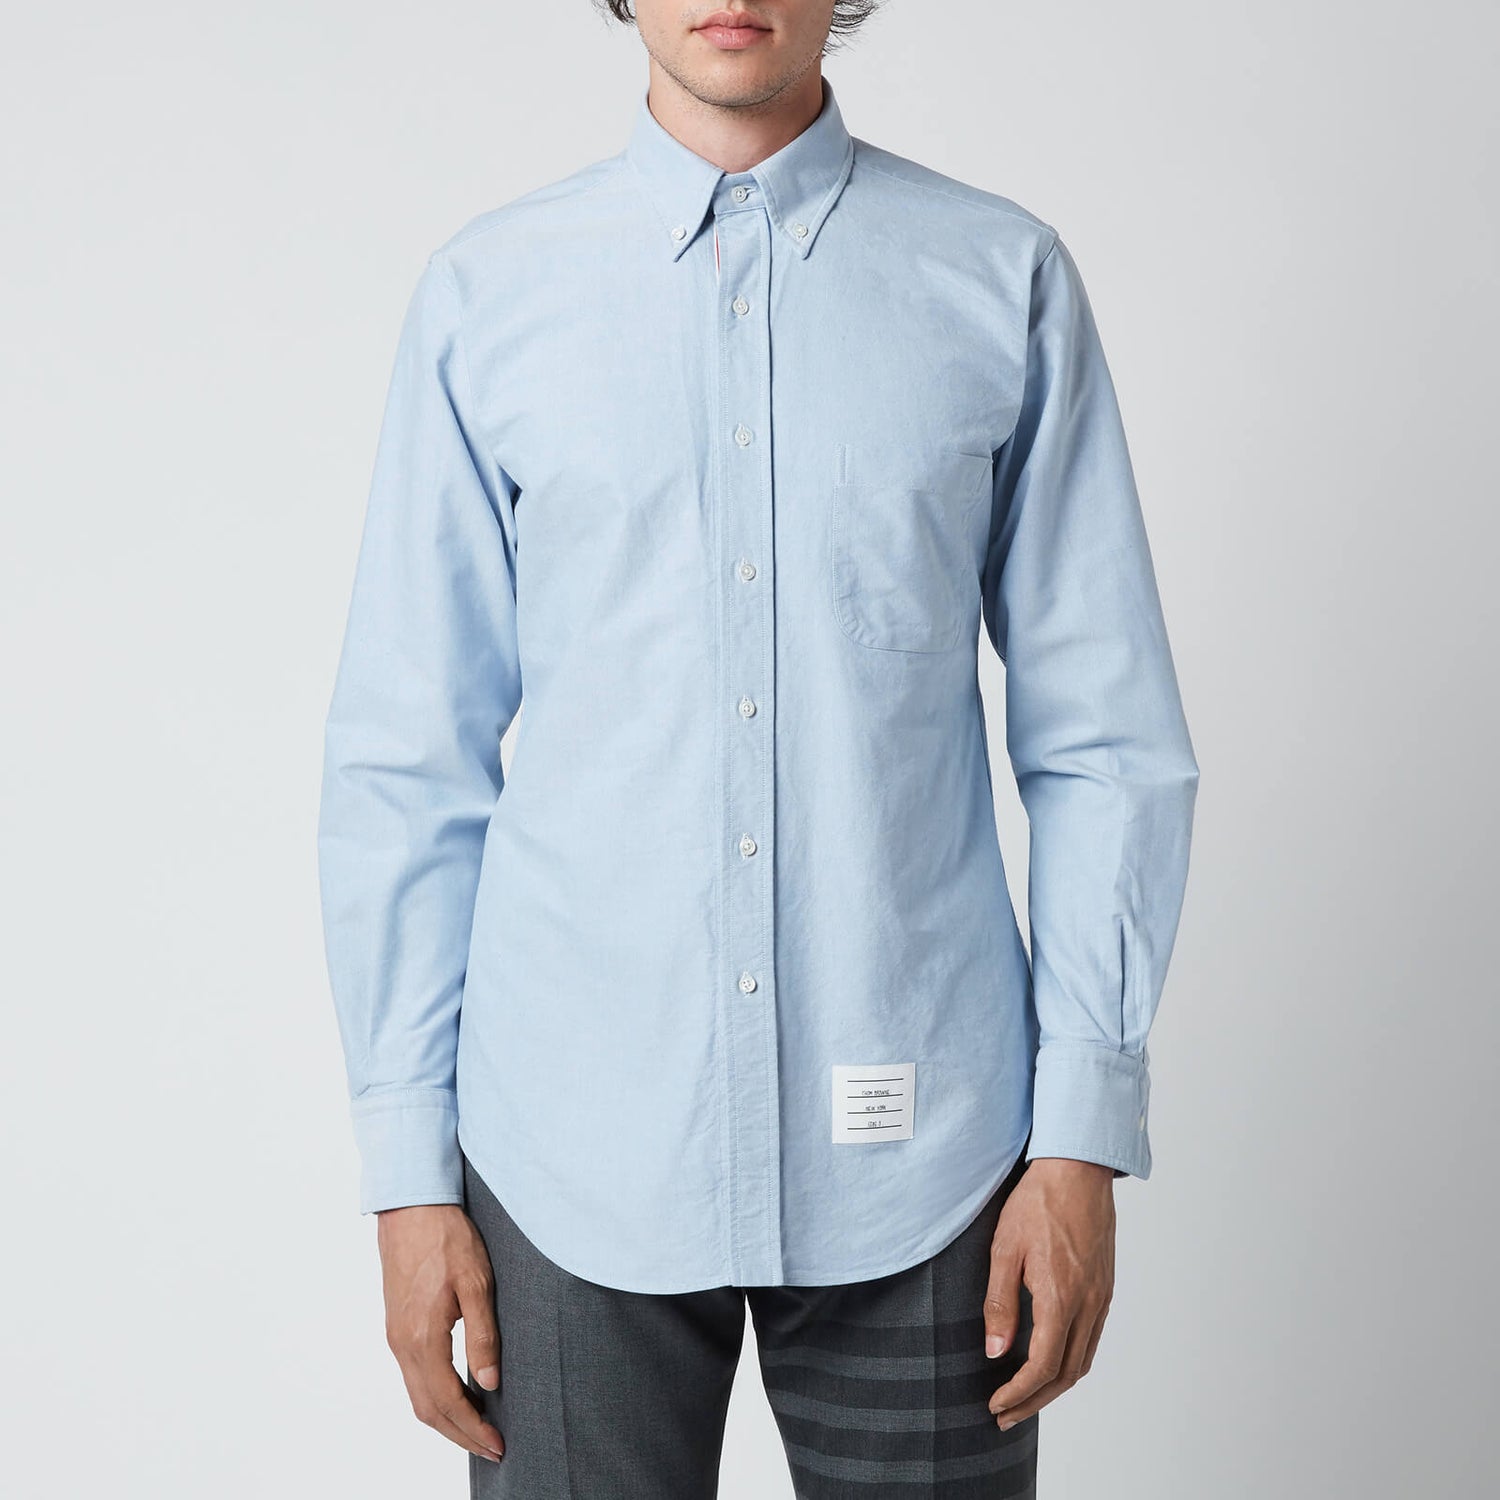 Thom Browne Men's Tricolour Placket Classic Fit Shirt - Light Blue - 4/XL